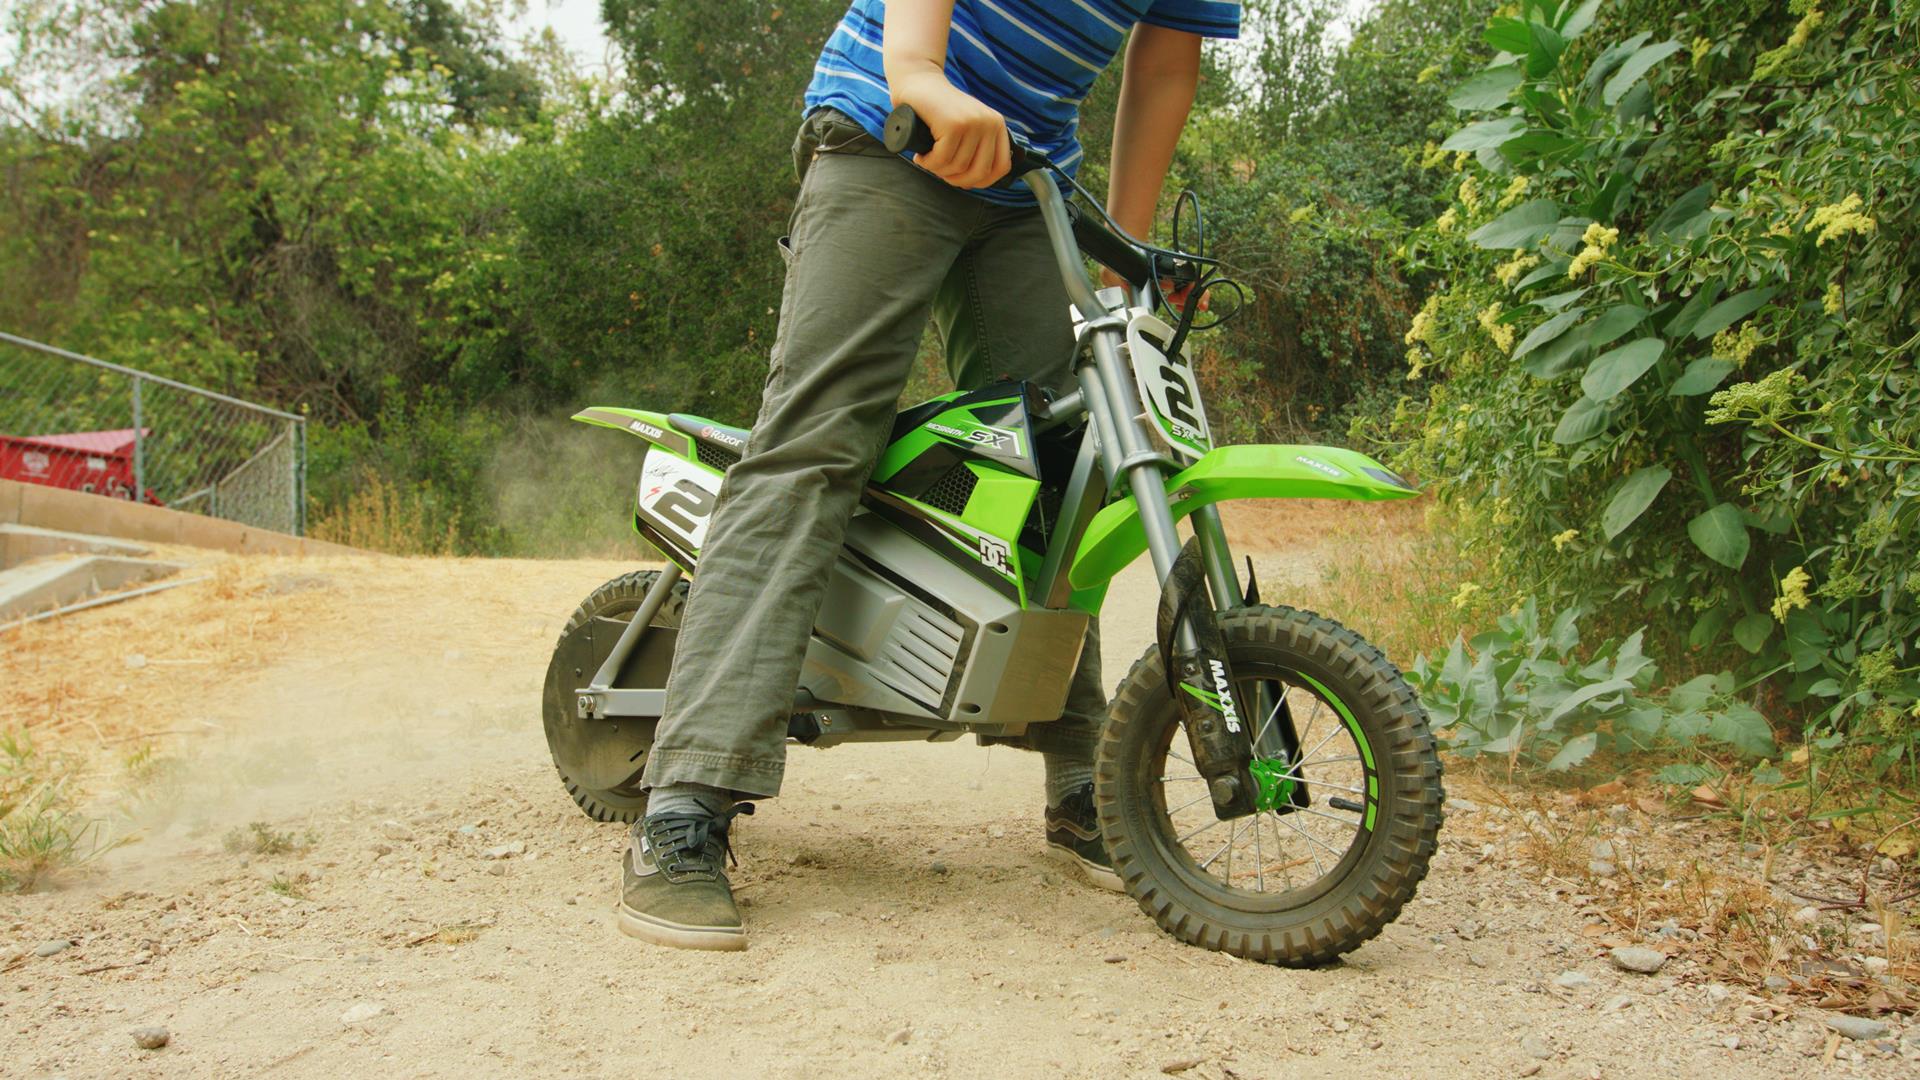 Razor Dirt Rocket SX350 McGrath Elektriskais bērnu motocikls, Zaļš